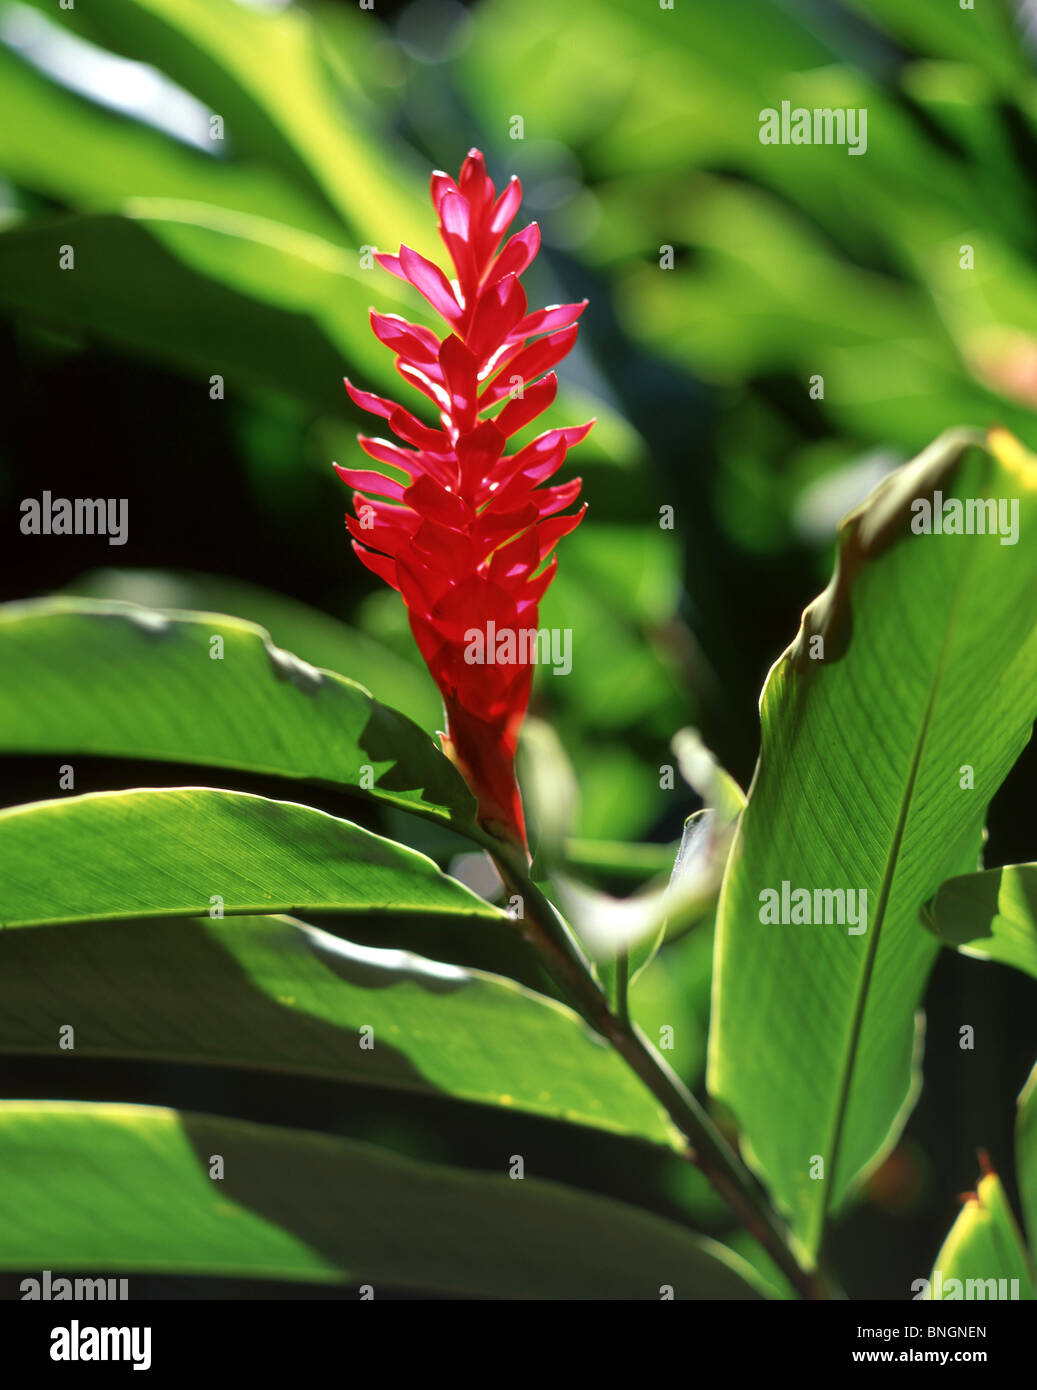 Ginger Lily Pflanze, Oahu, Hawaii, Vereinigte Staaten von Amerika  Stockfotografie - Alamy